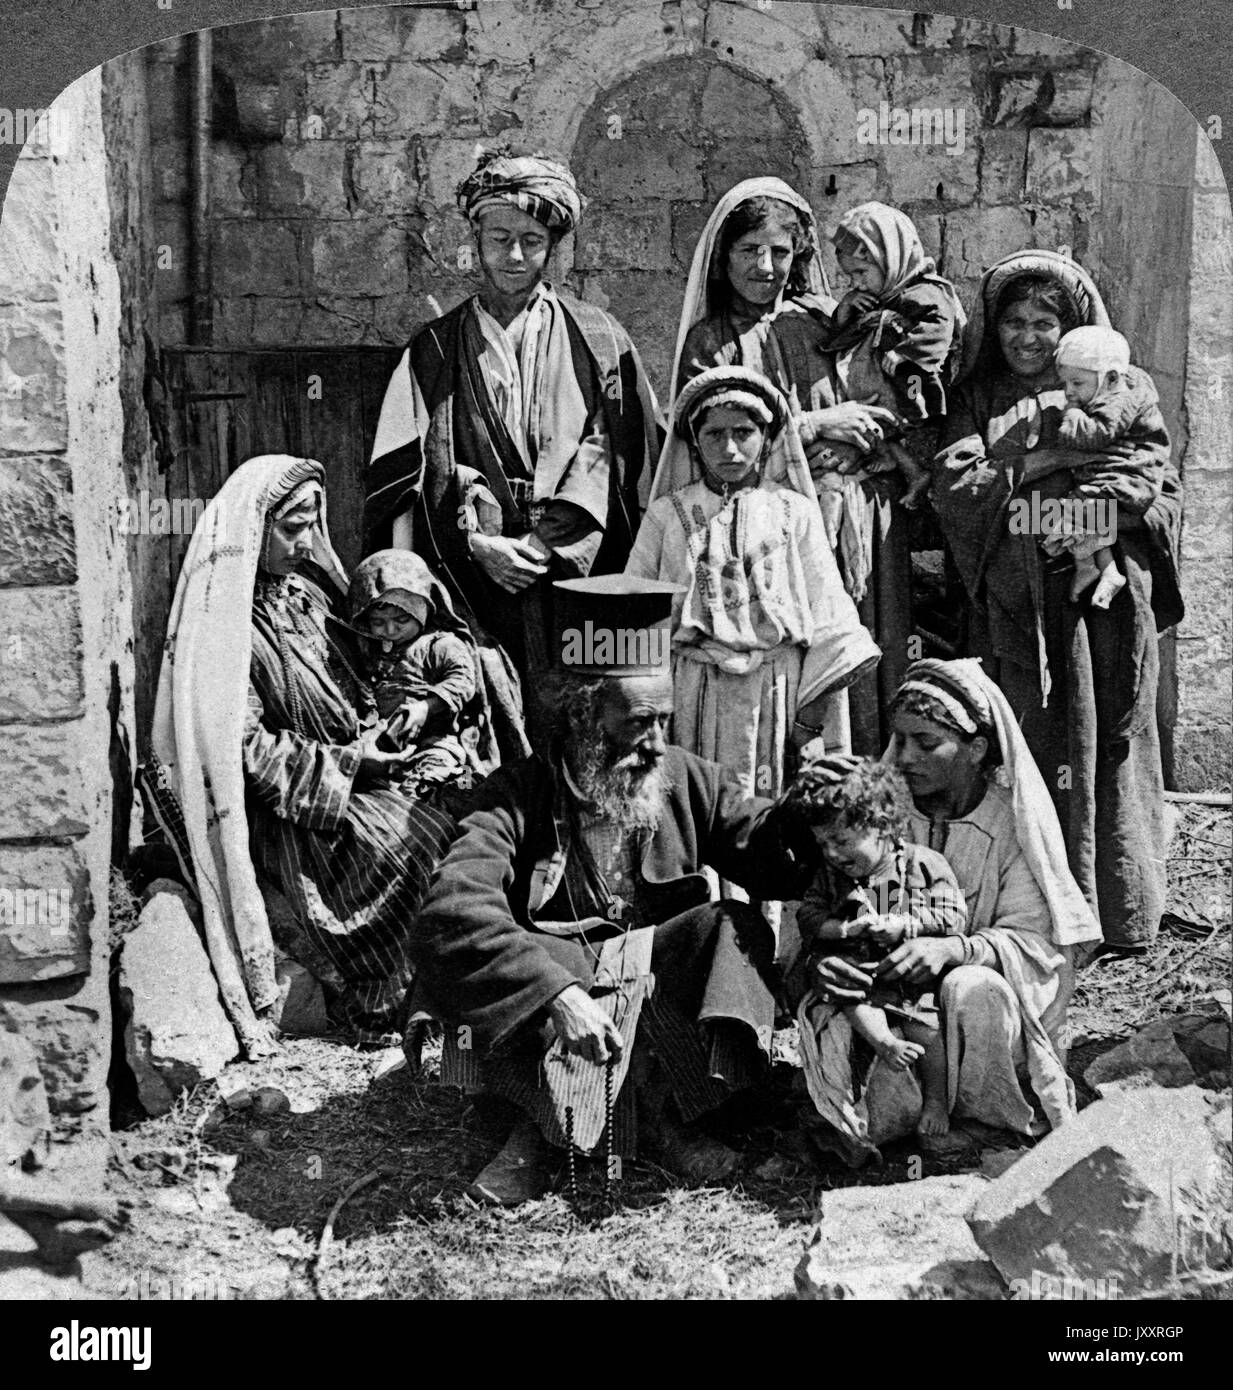 Griechischer Ein Priester segnet mourir dans Dorfkinder Rama, Palestine 1900. Un prêtre grec bénédiction les enfants du village de Rama, Palestine 1900. Banque D'Images